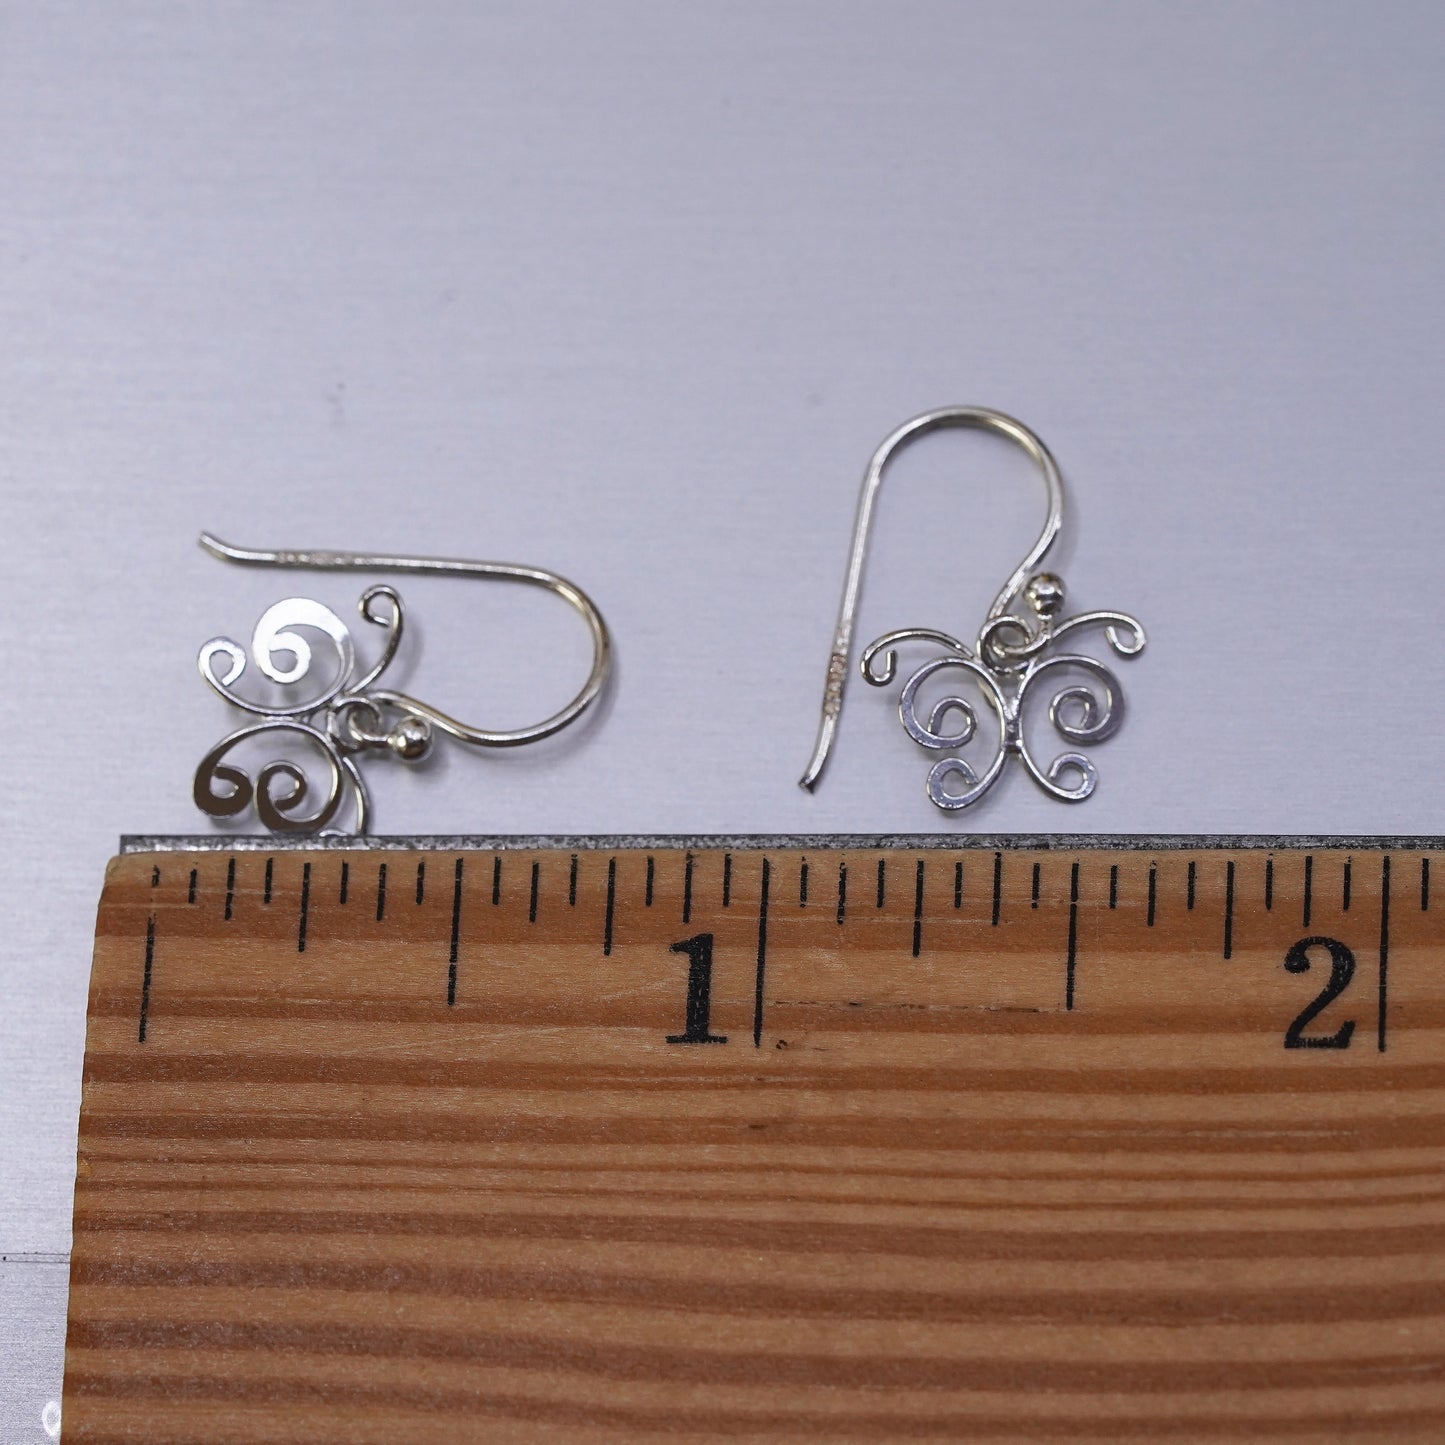 Vintage Sterling silver handmade earrings, 925 filigree butterfly drops